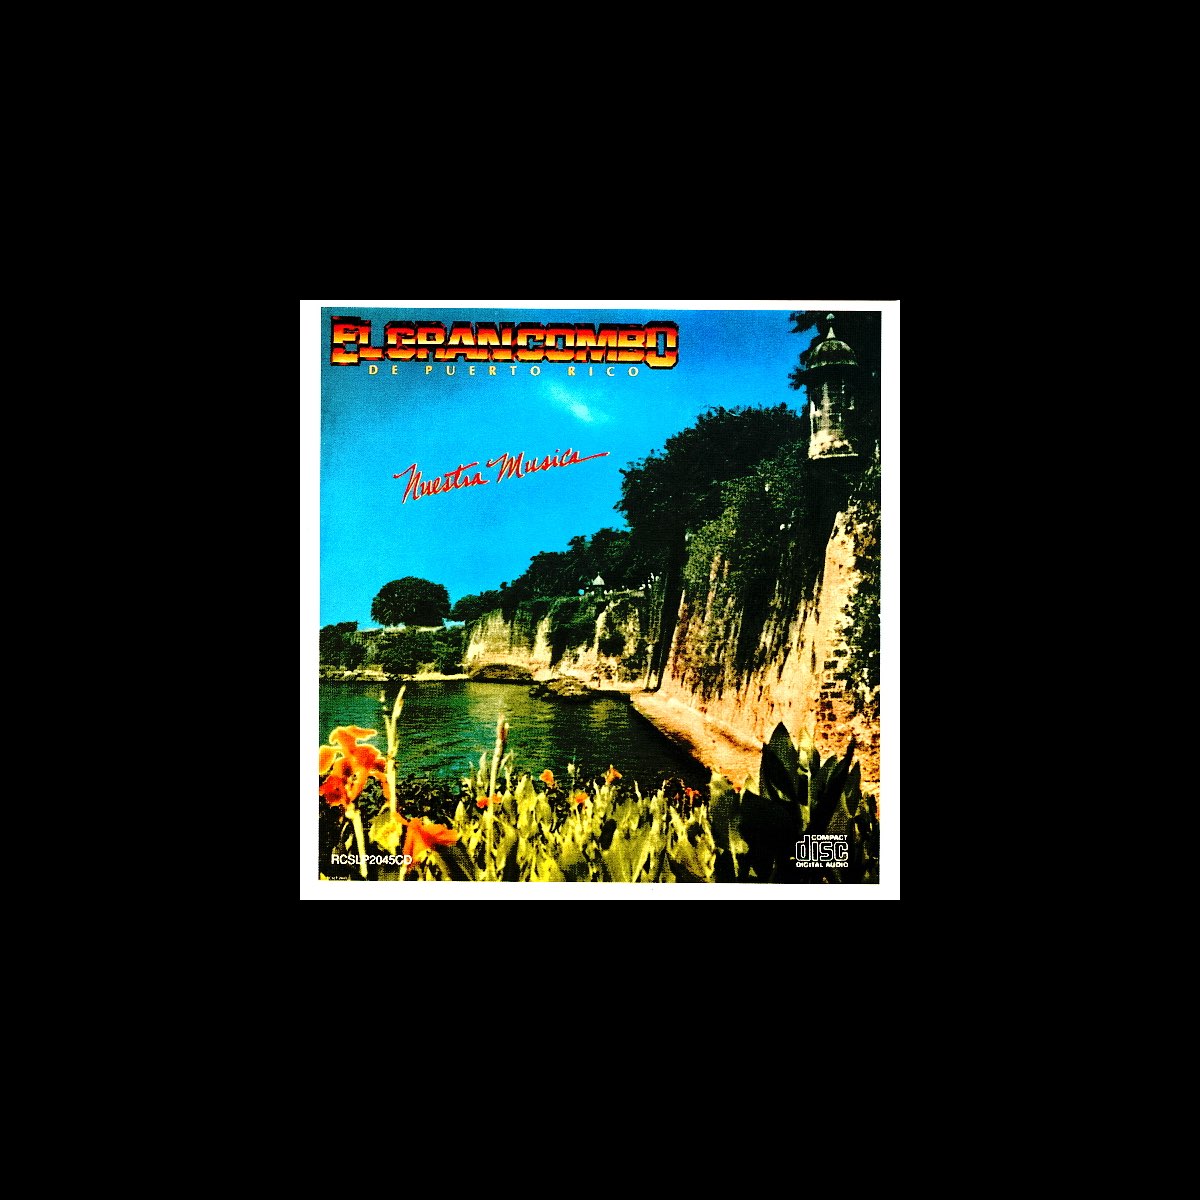 Nuestra Música (Remastered) by El Gran Combo de Puerto Rico on Apple Music